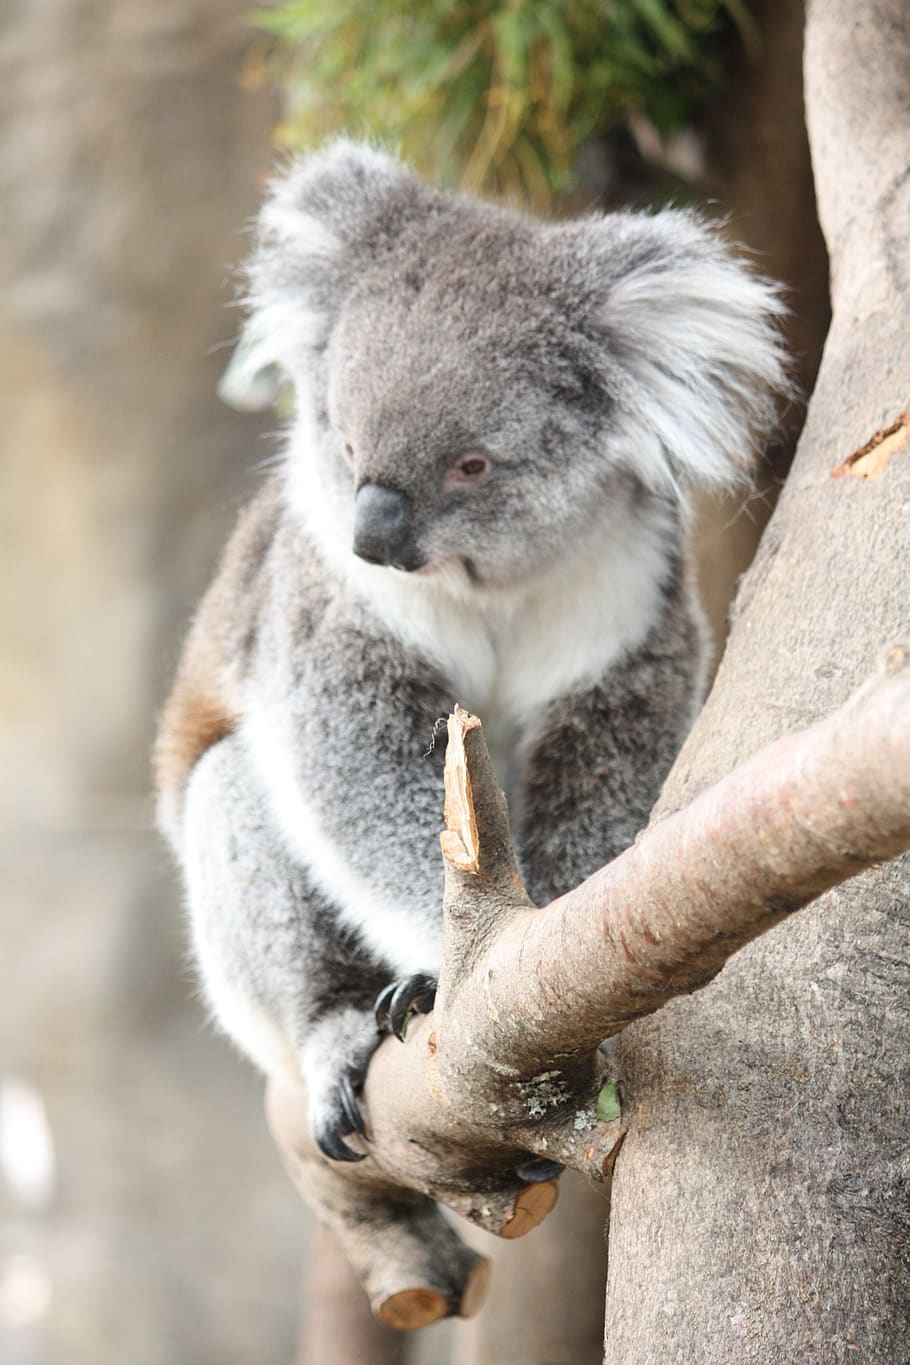 kuala, austrália, animal, fofo, mamífero, vida selvagem, animais selvagens, coala, um animal, árvore